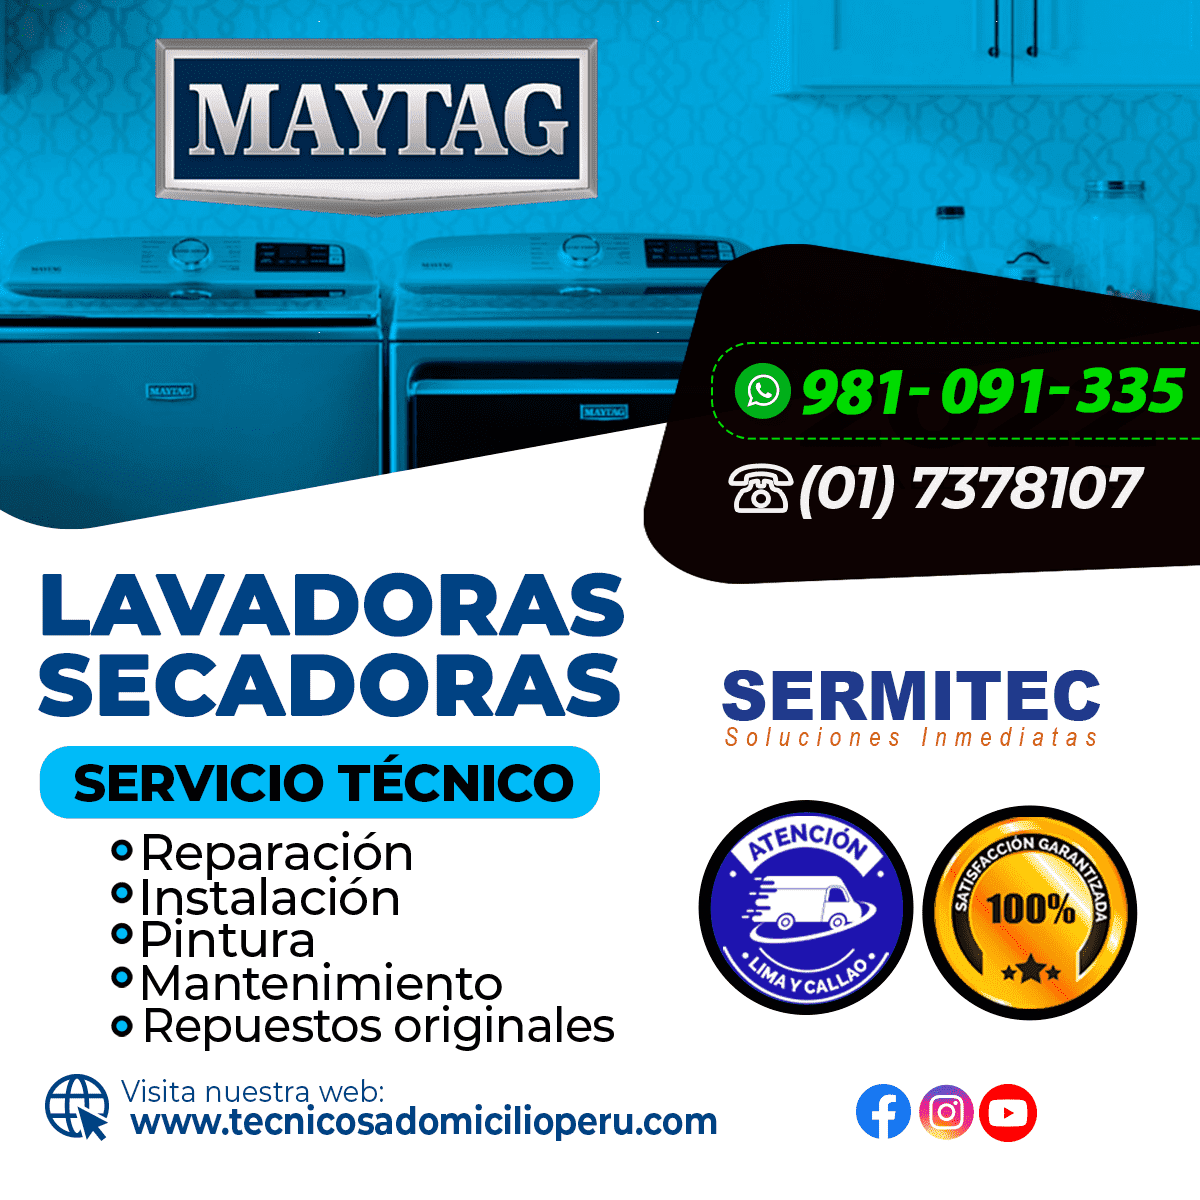 Maytag Reparación de Lavadoras 981091335 SAN ISIDRO